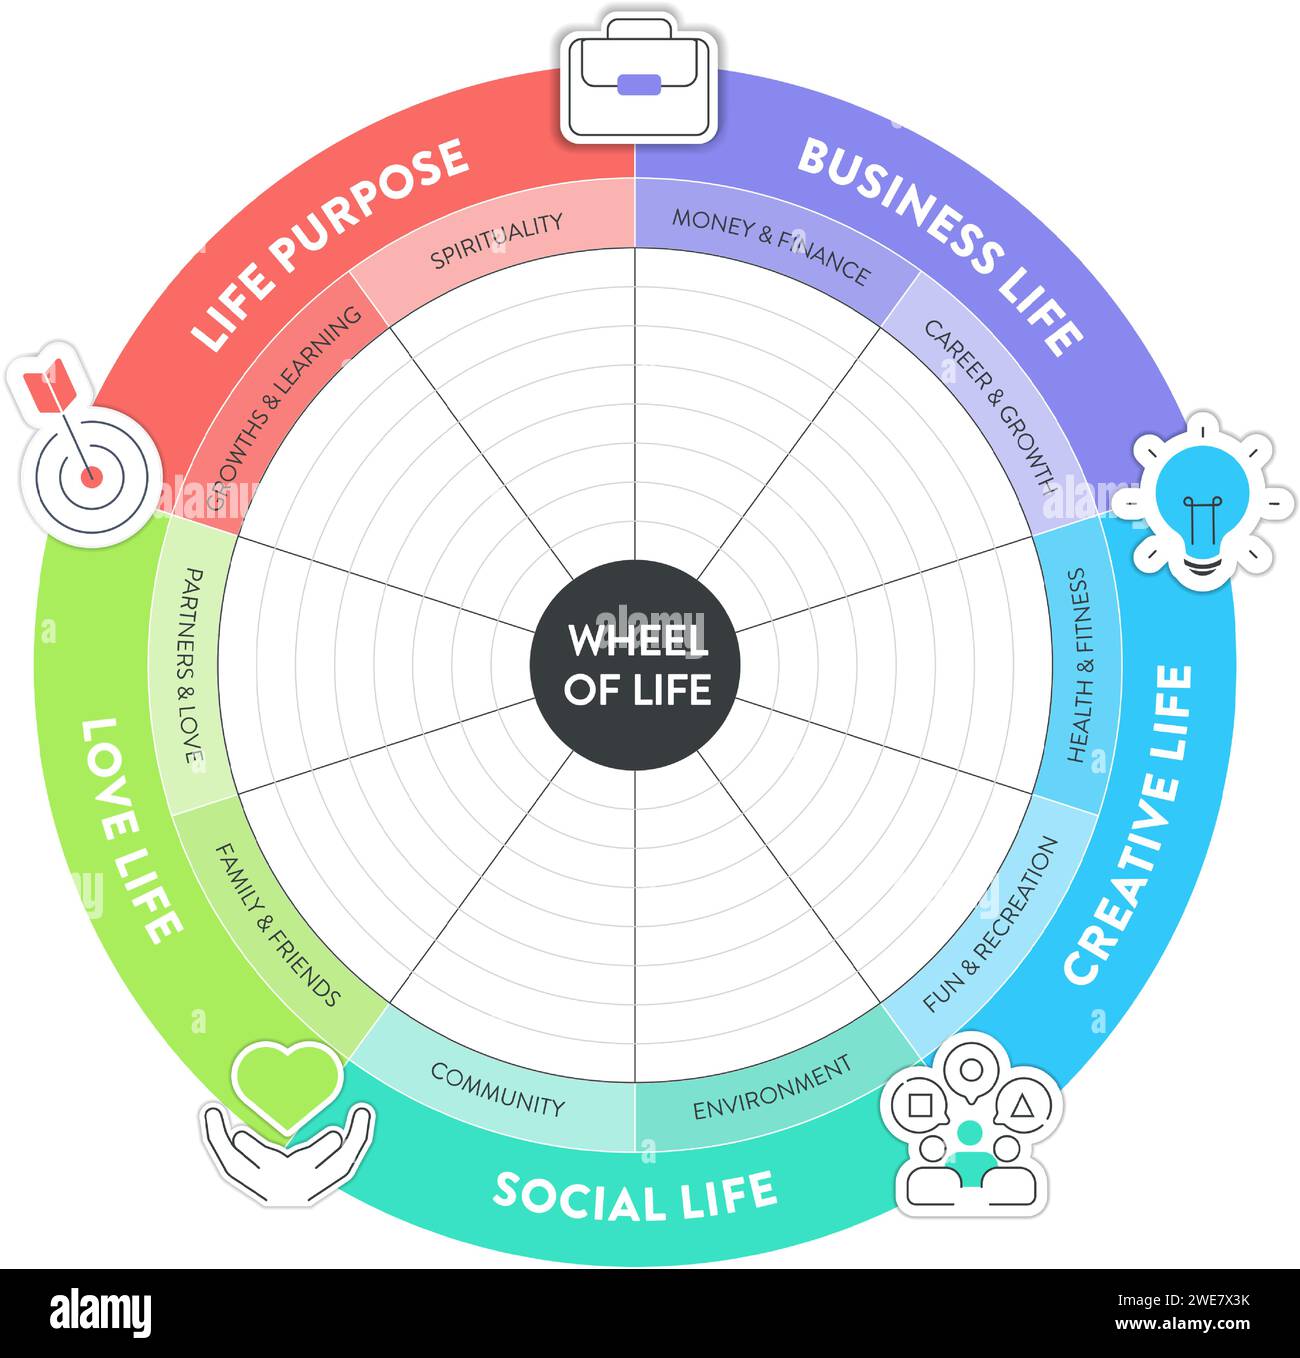 Diagramme d'analyse roue de la vie l'infographie avec modèle d'icône comporte 8 étapes telles que la vie sociale, la carrière, la finance, la famille, les relations, develo personnel Illustration de Vecteur